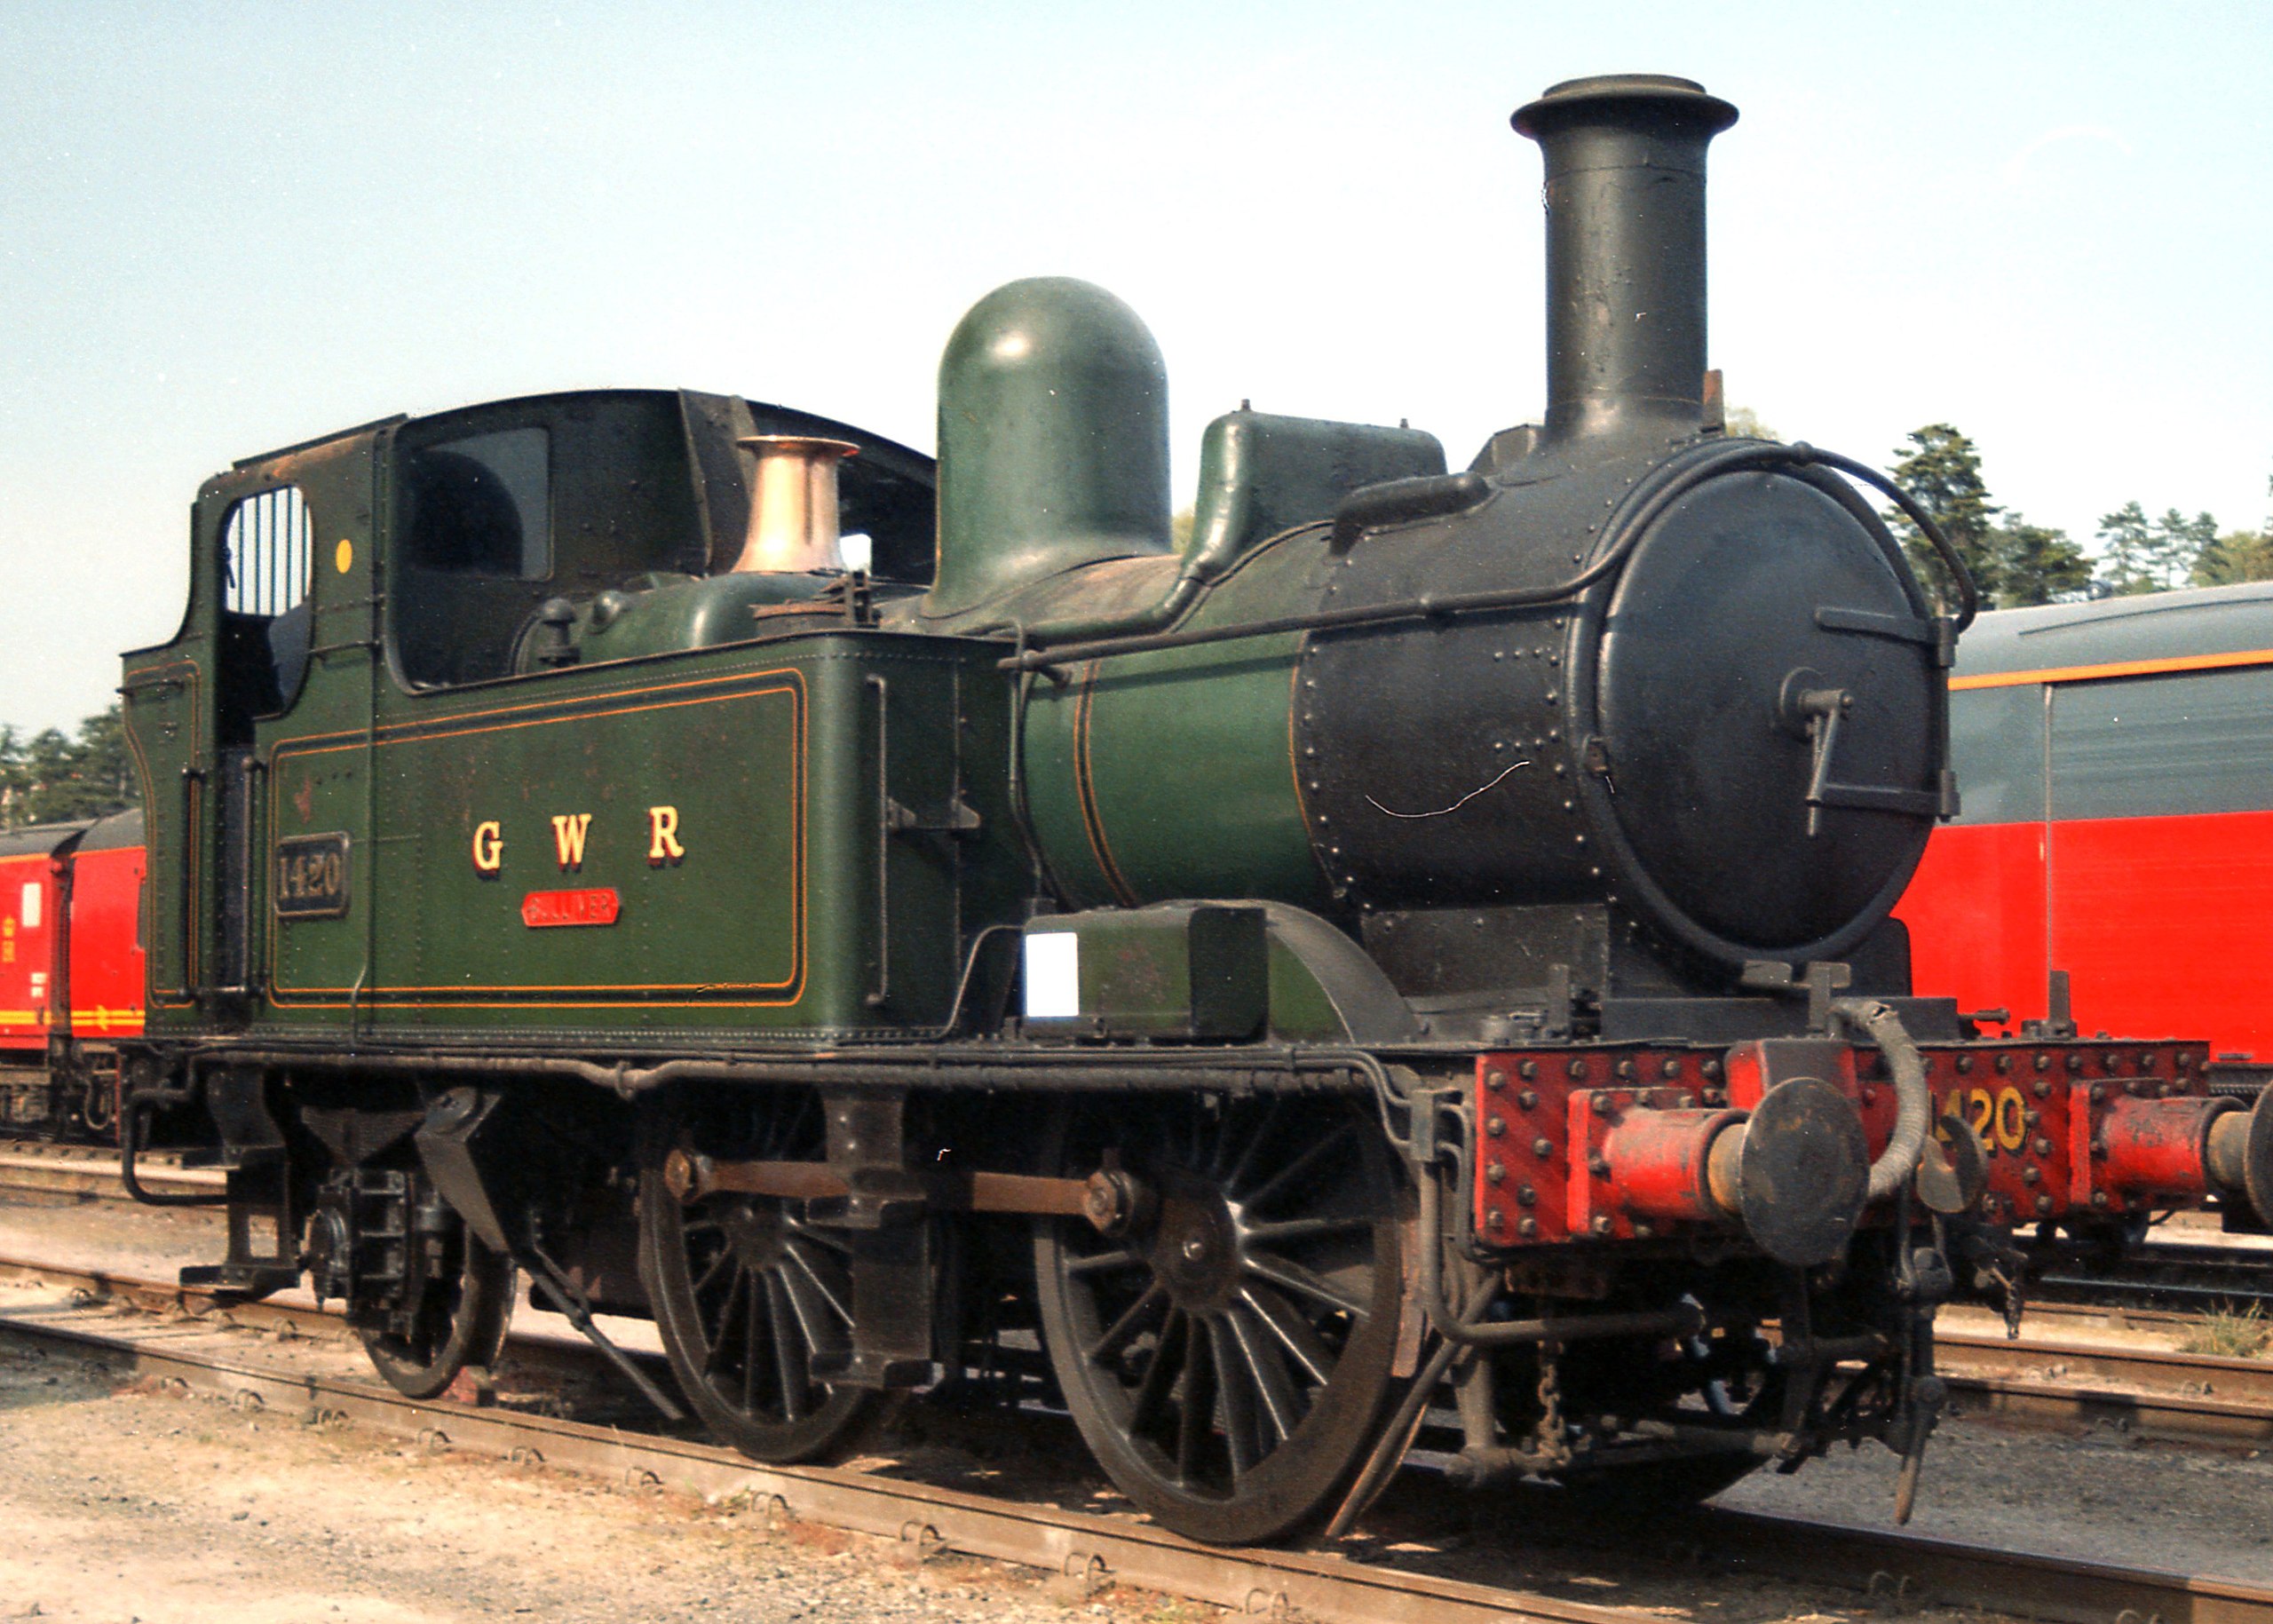 GWR 1400 Class No. 1420 